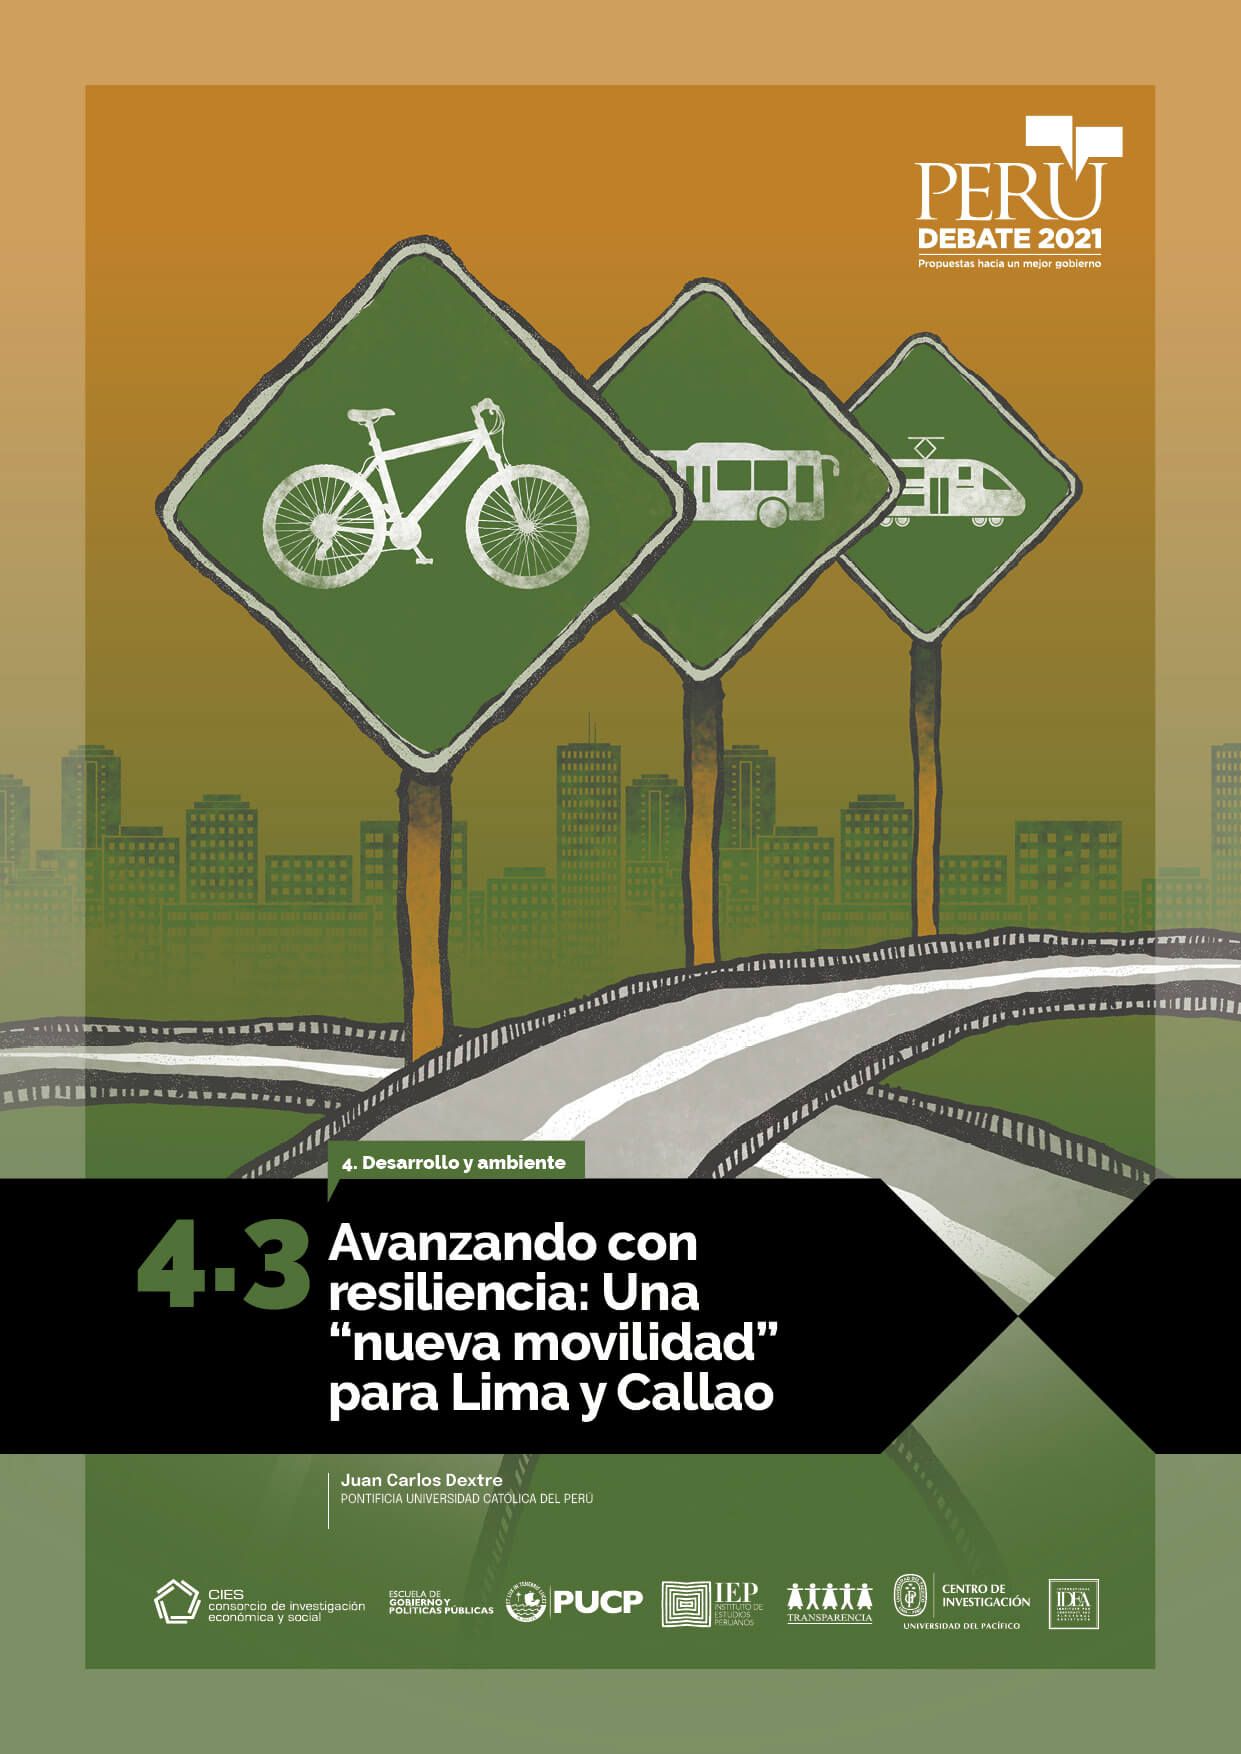 Avanzando con resiliencia: una “nueva movilidad” para Lima y Callao